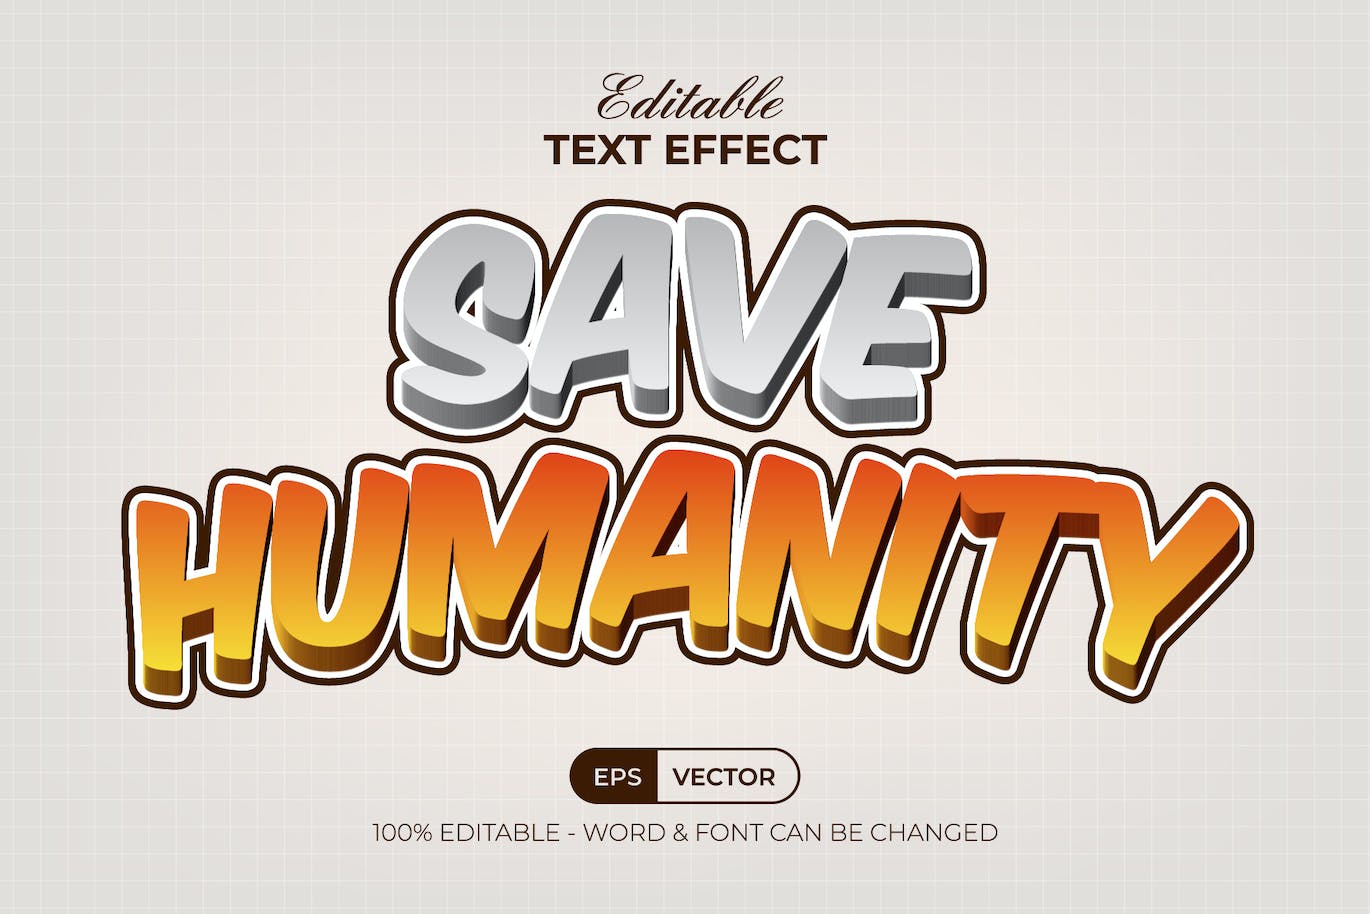 文字效果漫画风格 AI 字体样式 Text Effect Comic Style